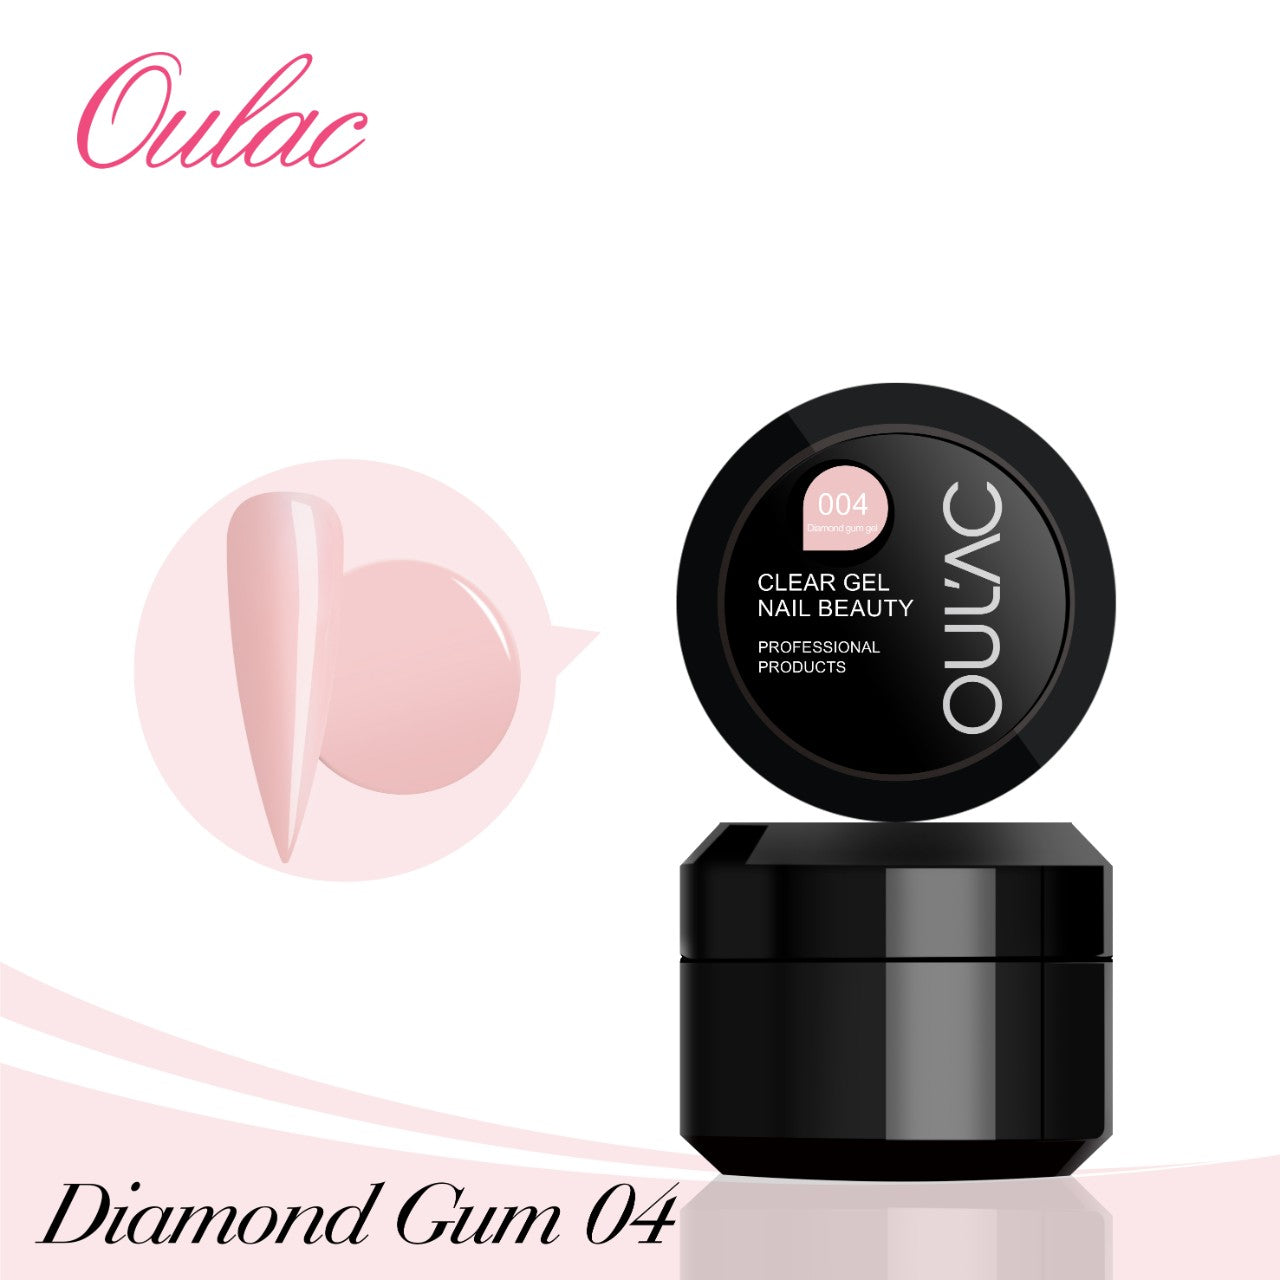 Acrygel / Diamond Gum Gel Pink Nude 04 - 30ml